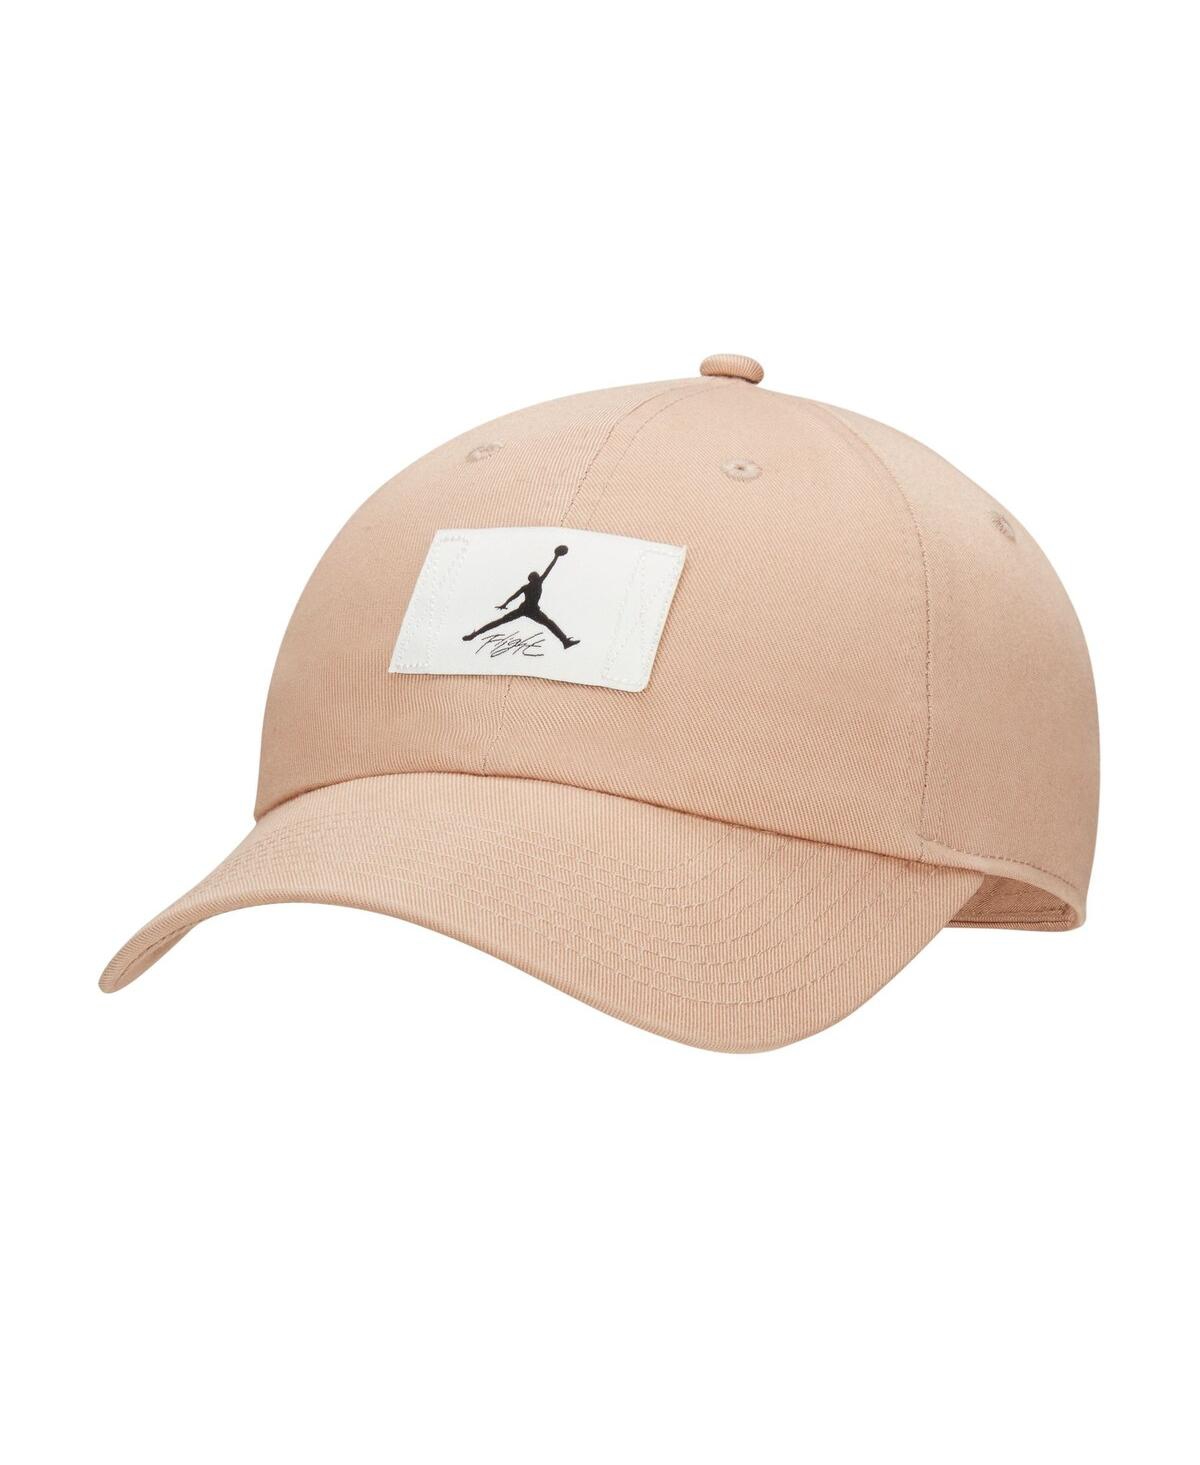 Men's Jordan Tan Logo Adjustable Hat - Tan